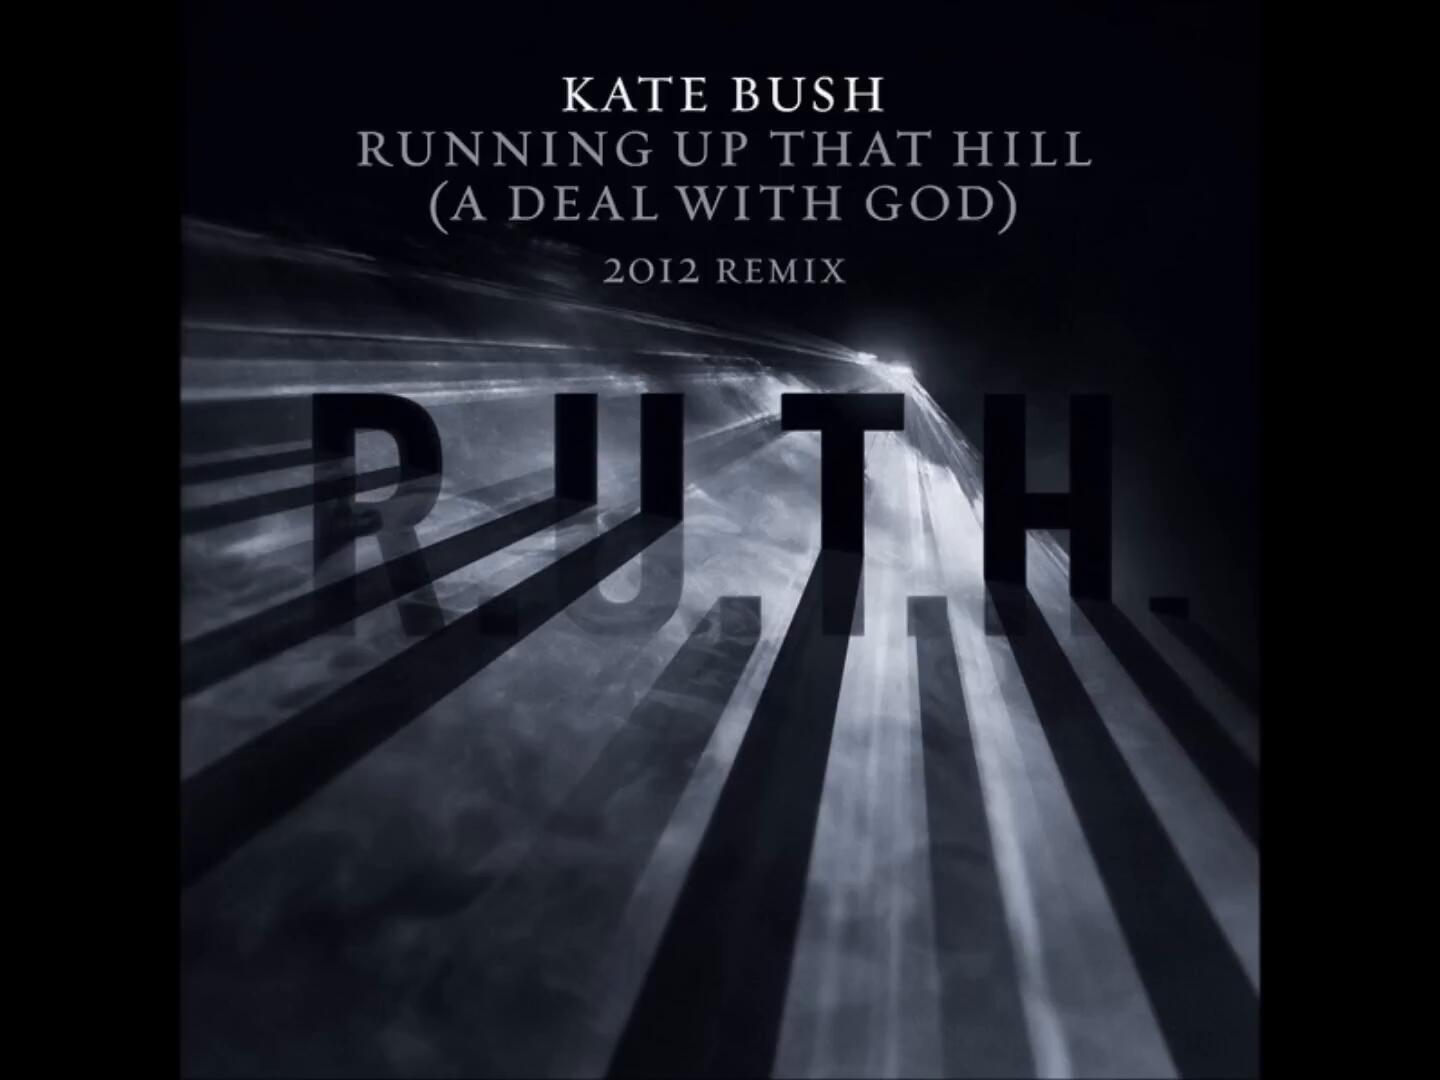 Running up that hill a deal. Running up that Hill Кейт Буш. Kate Bush Running up that Hill обложка. Кейт Буш и Дэвид Гилмор. Ремиксы 2012.